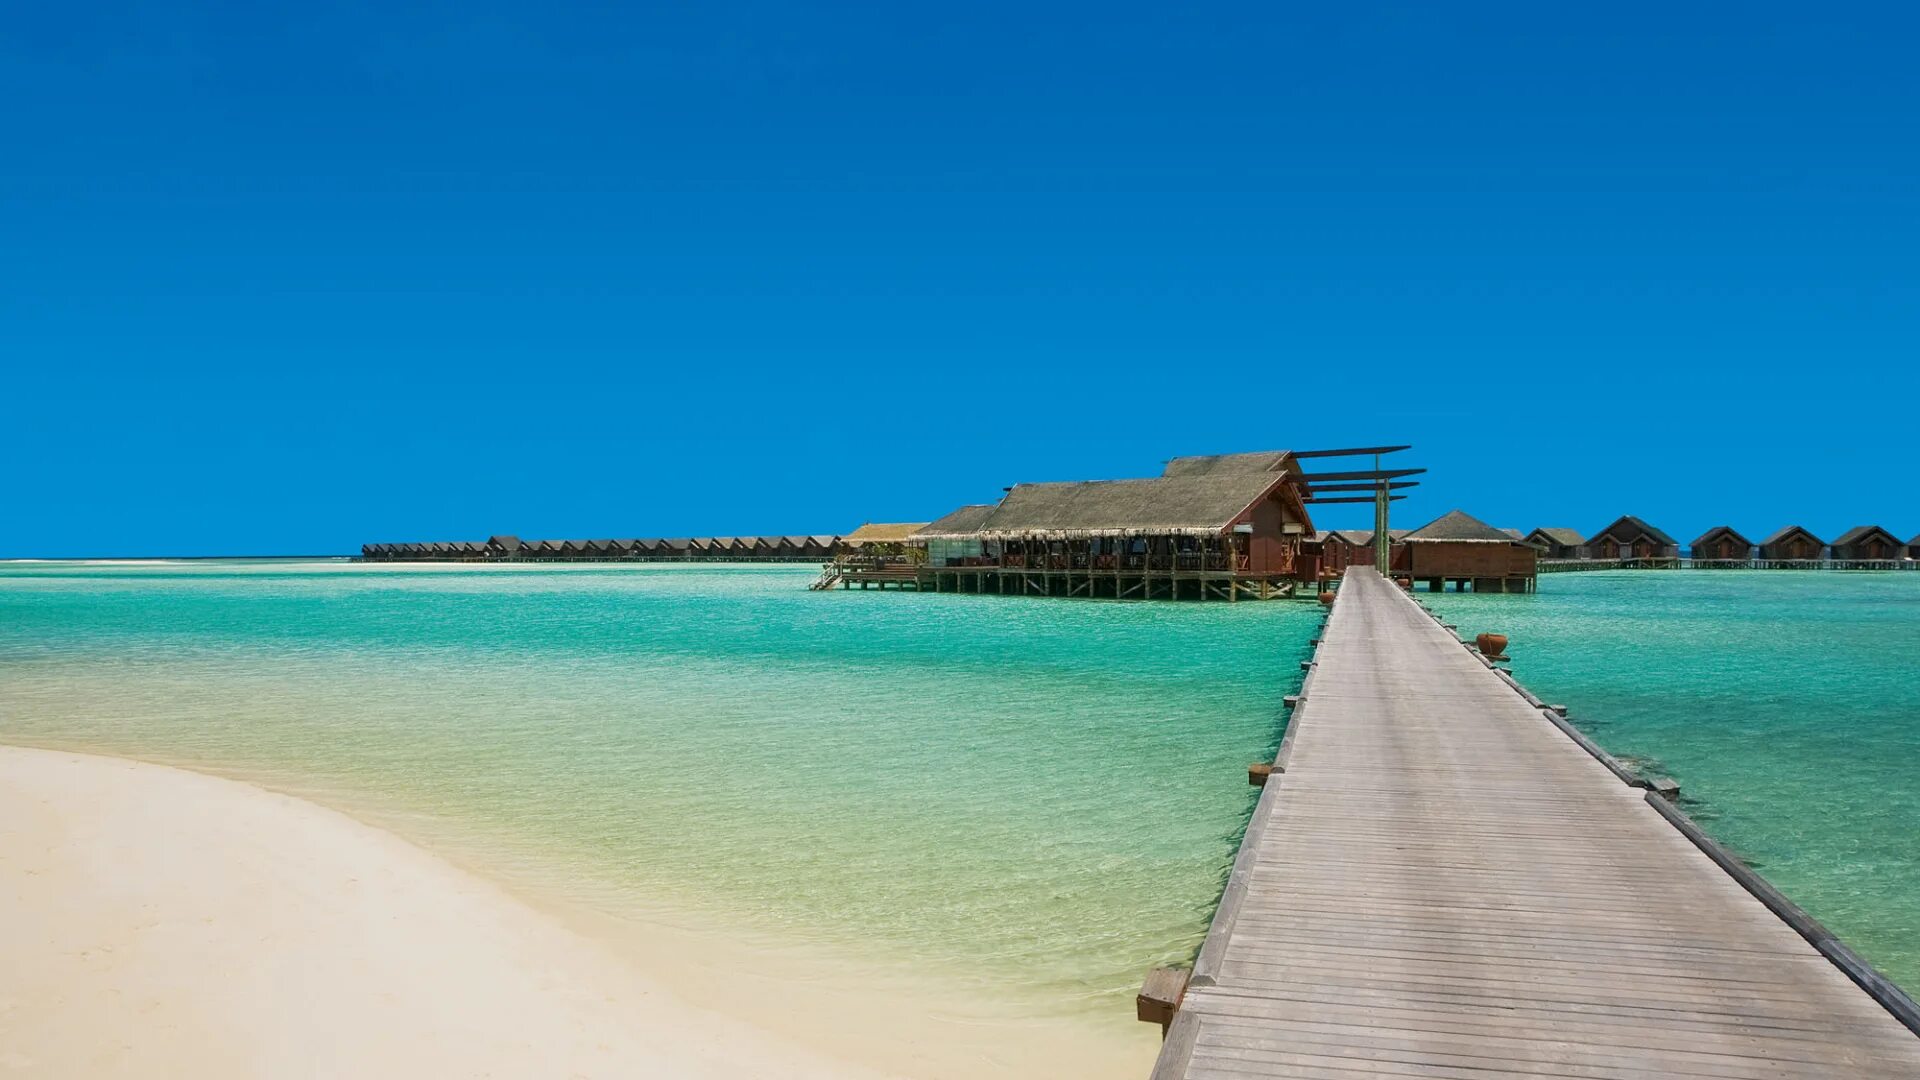 Мальдивы в мае отзывы. Мальдивы. Крымские мальщивымальдивы. Мальдивы пляж. Красивые курортные места.